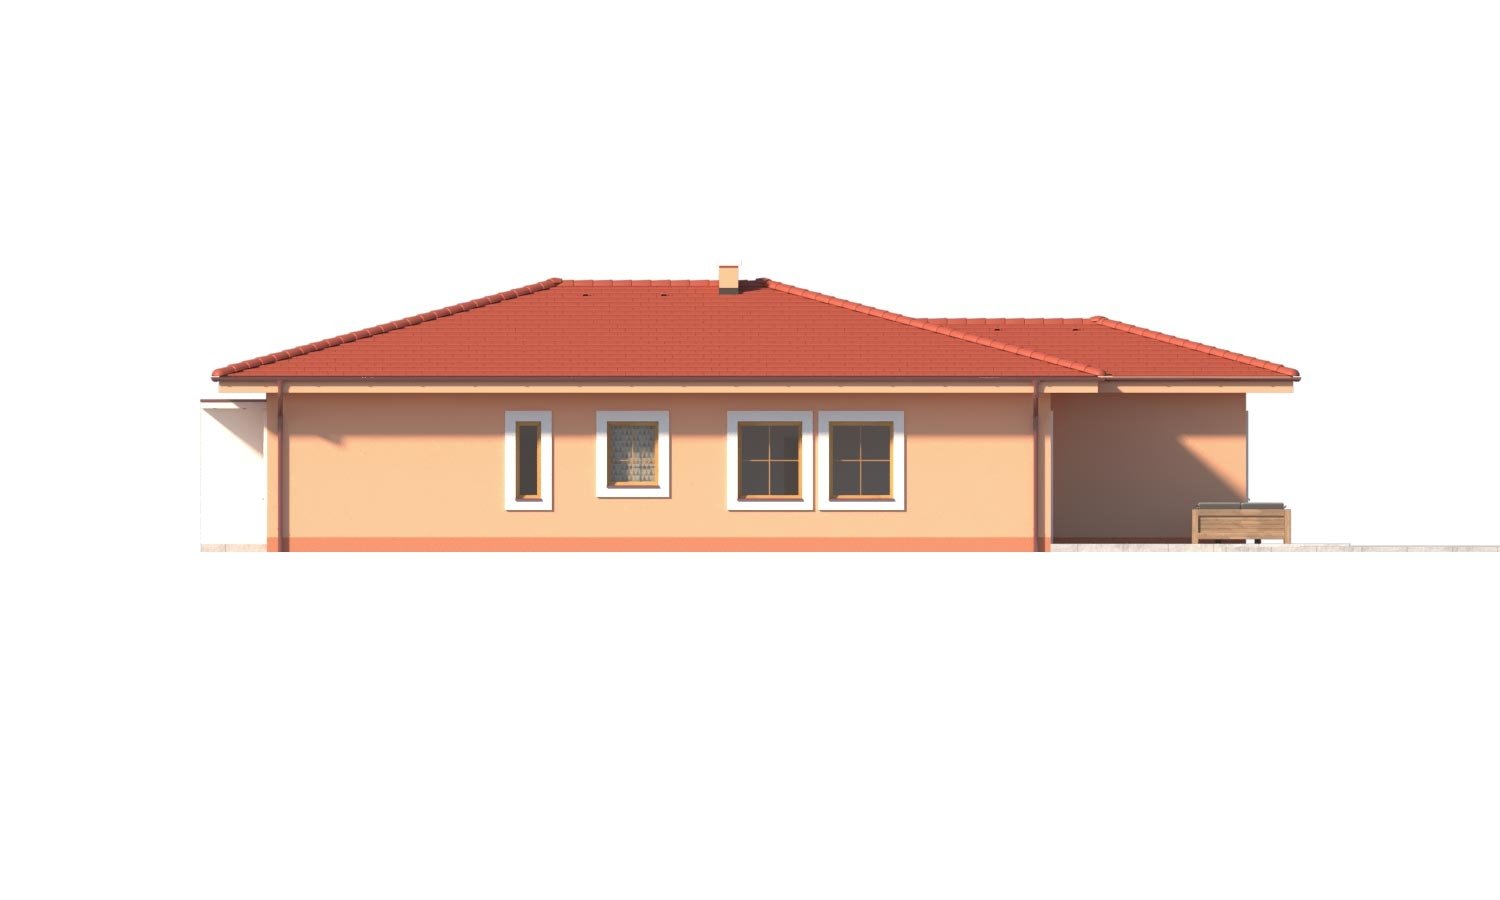 Zrkadlový pohľad 2. - Krásný 5-pokojový zděný bungalov s valbovou střechou a krbem.